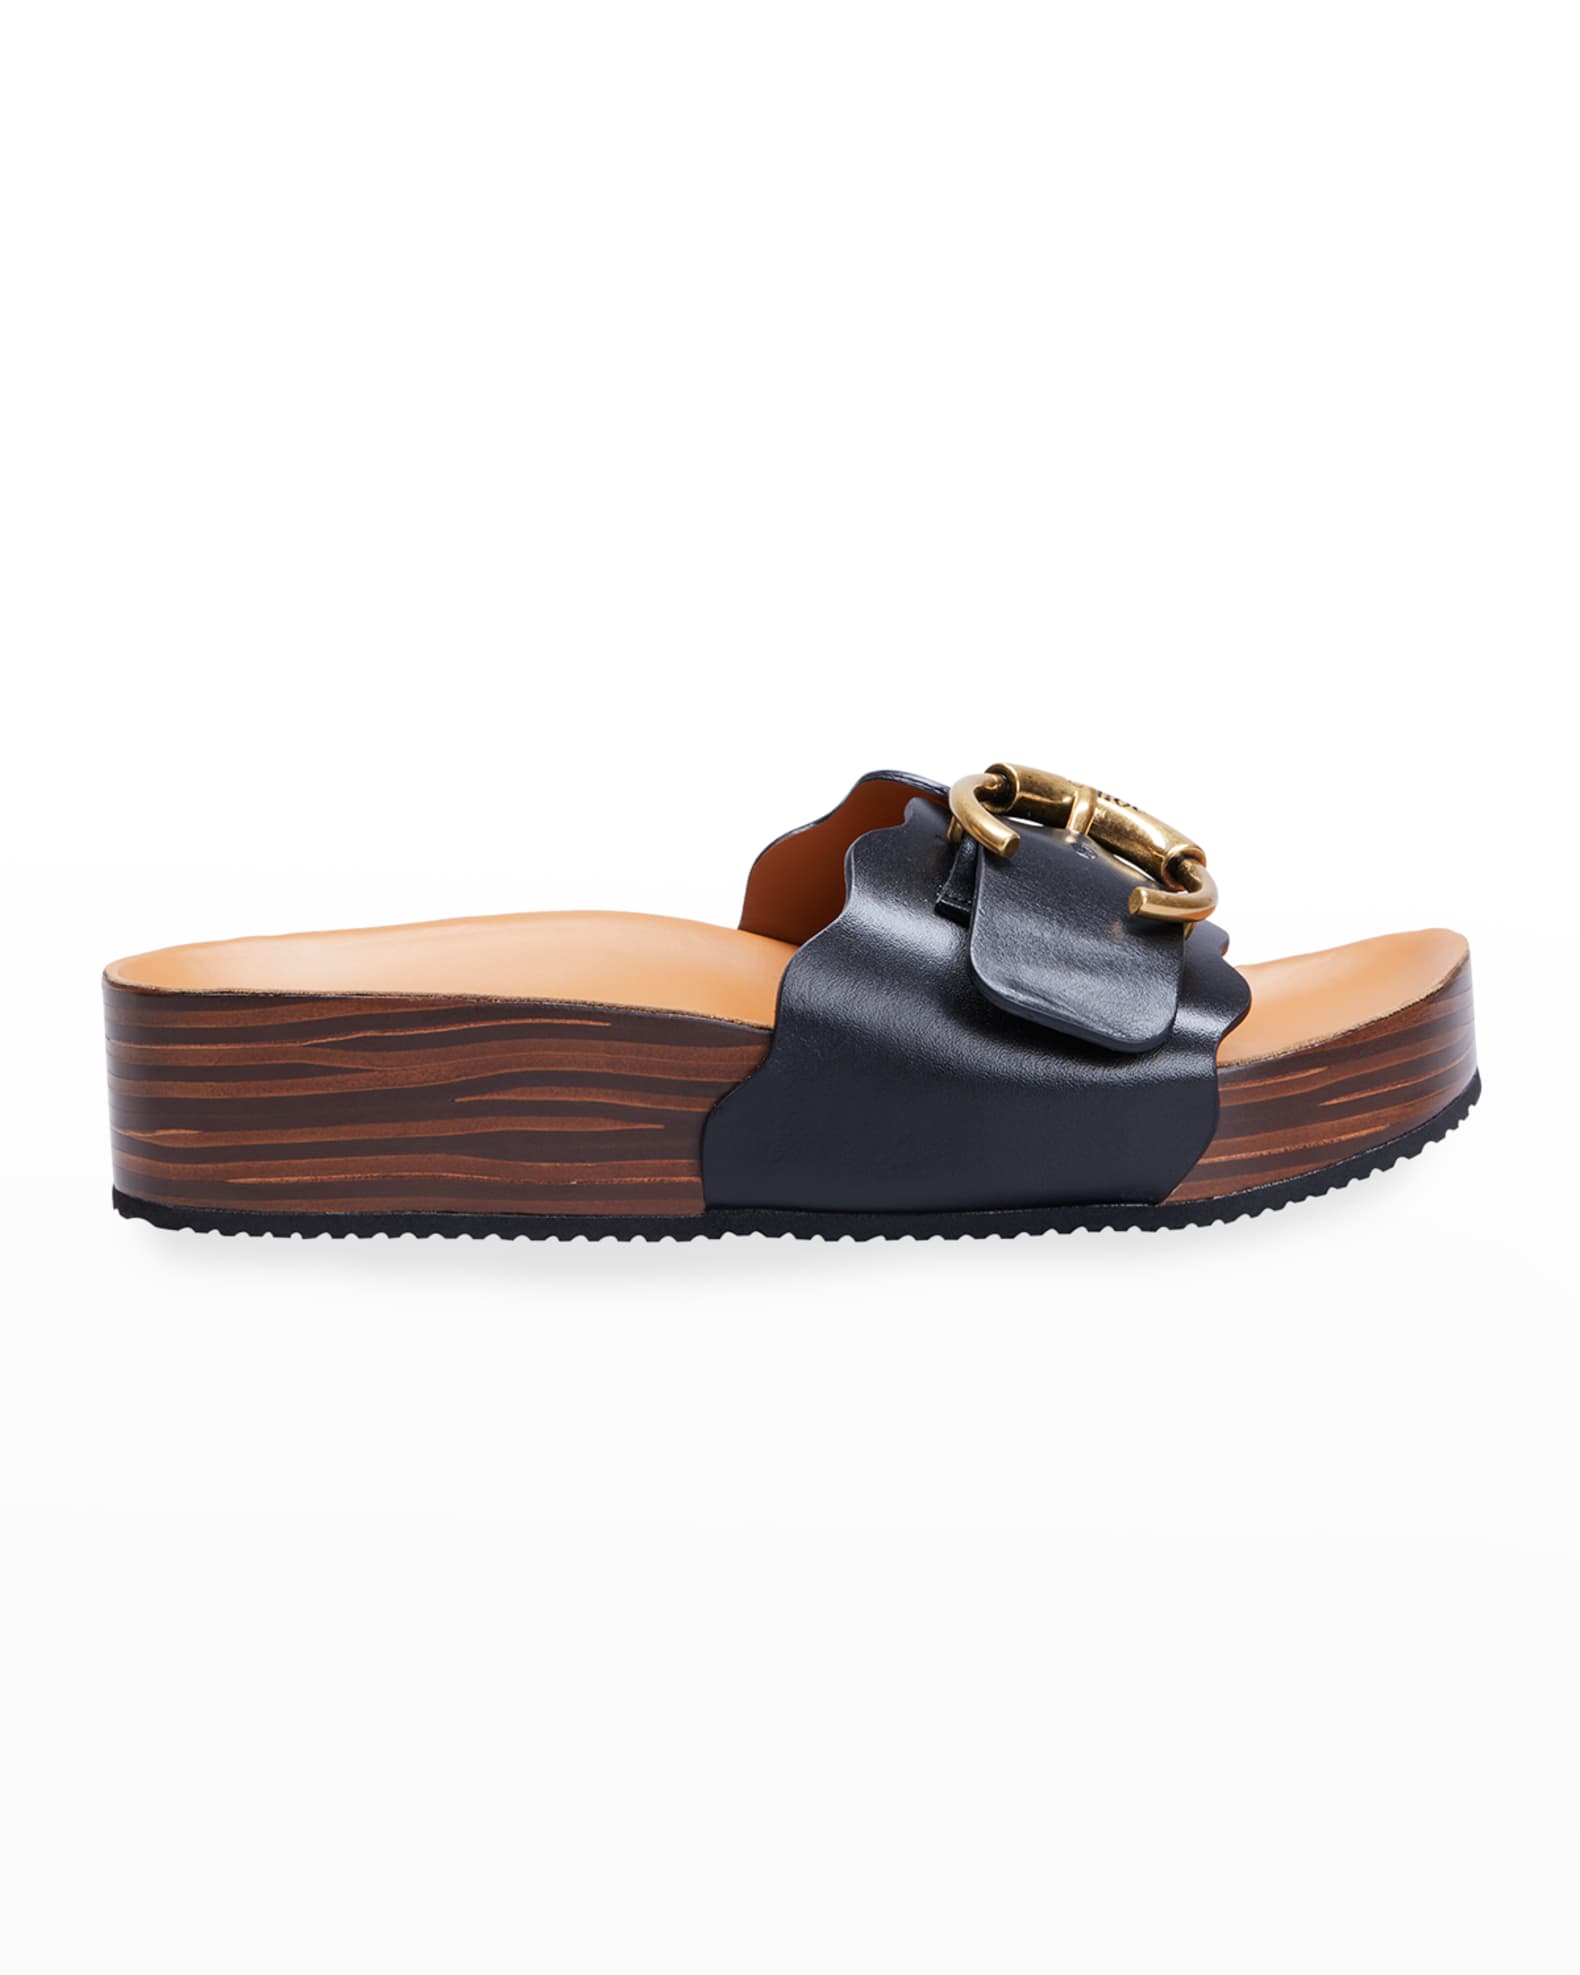 Chloe Lauren Buckle Slide Sandals | Neiman Marcus